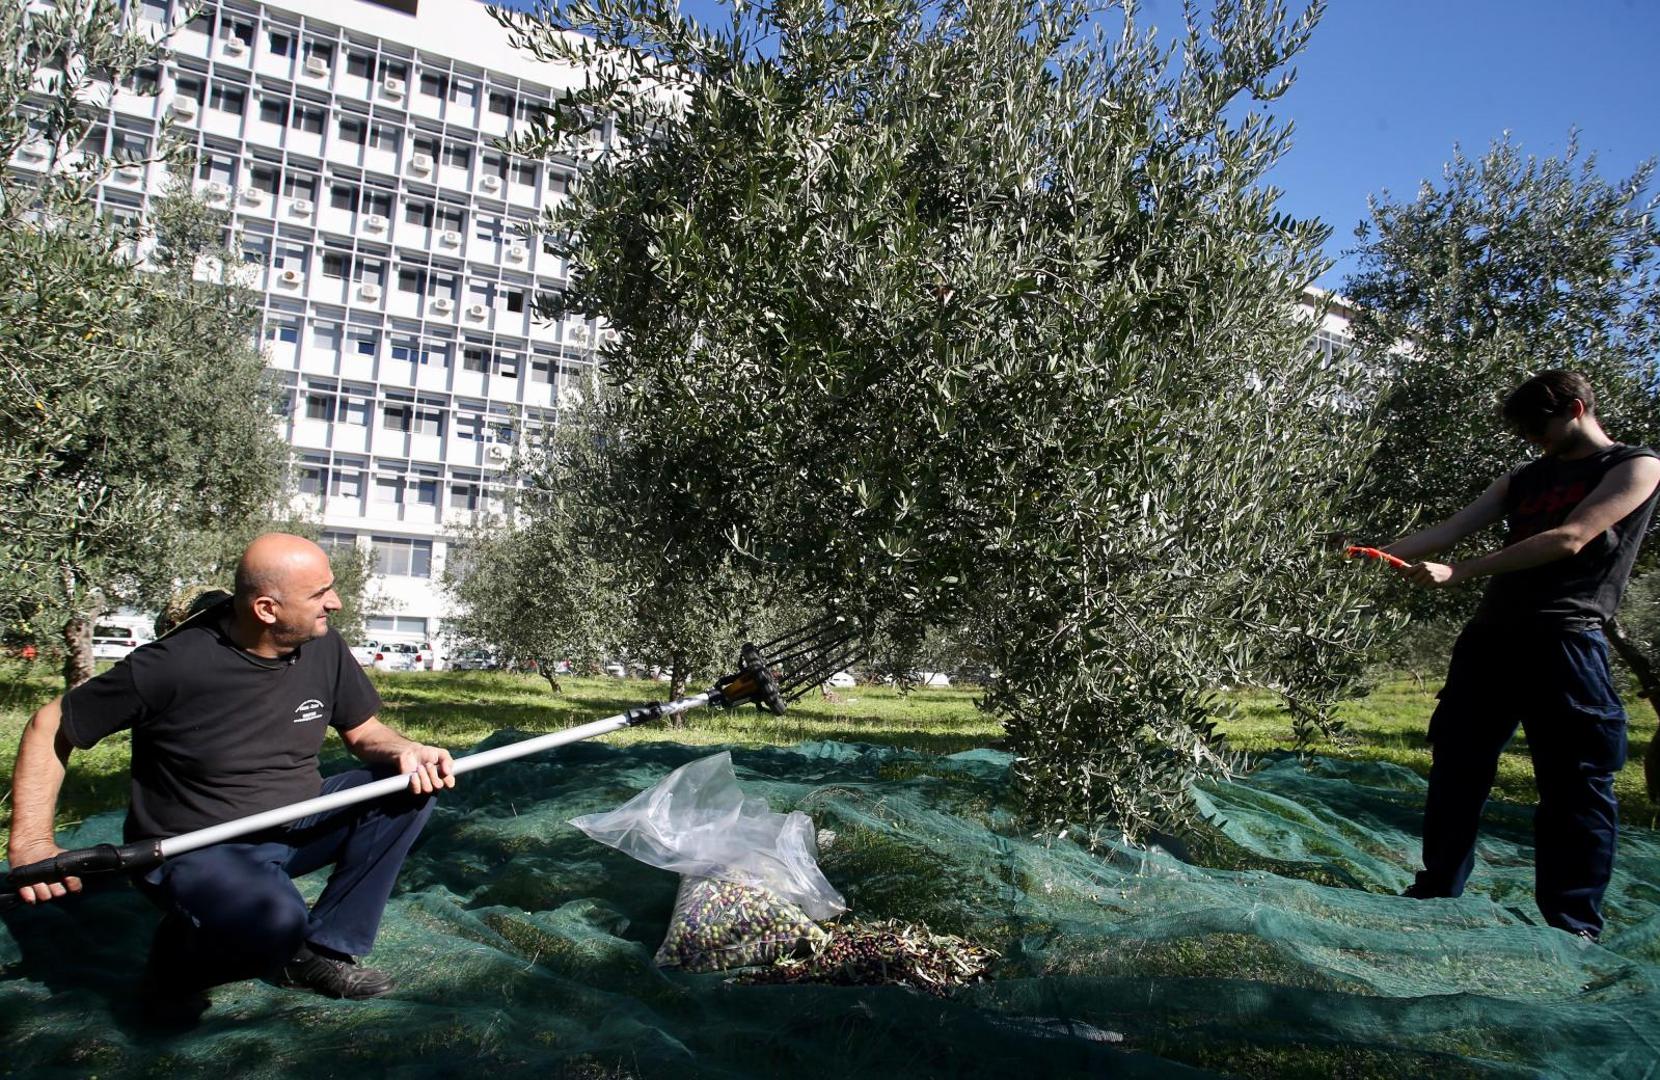 22.10.2020., Split - Branitelji i ove godine u akciji branja maslina ispred bolnice Krizine. Photo: Ivo Cagalj/PIXSELL